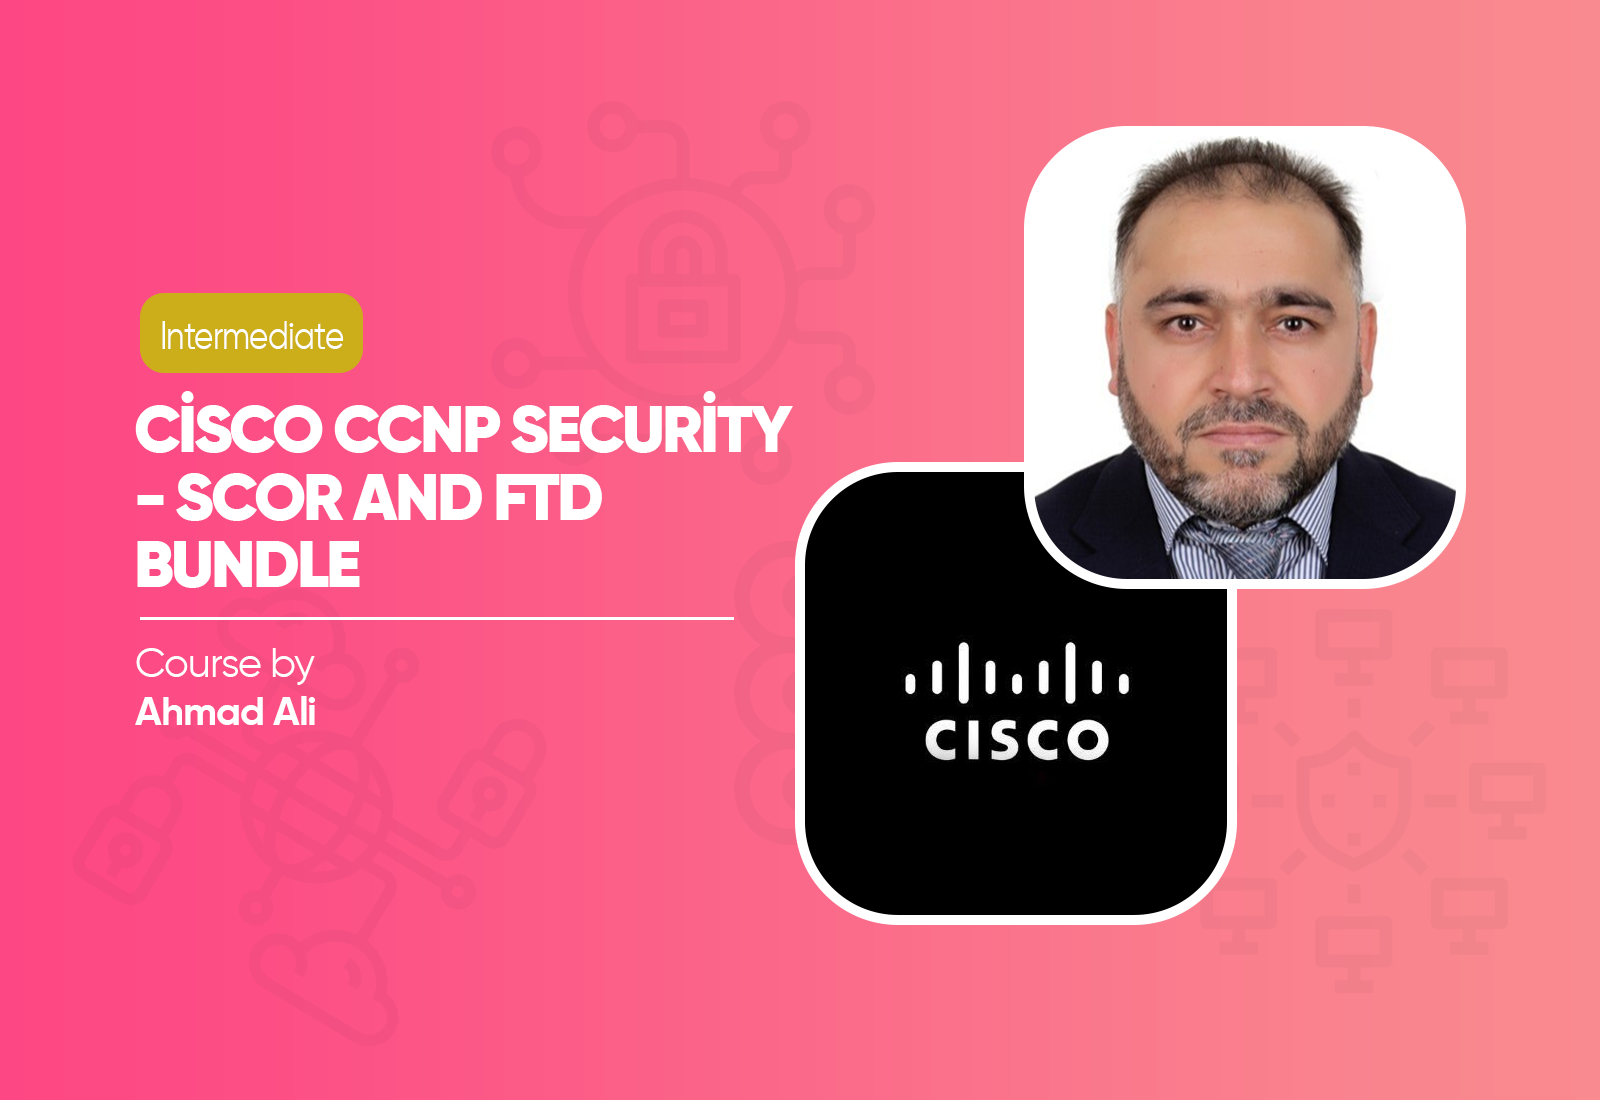 Cisco CCNP Security - SCOR and FTD Bundle Course